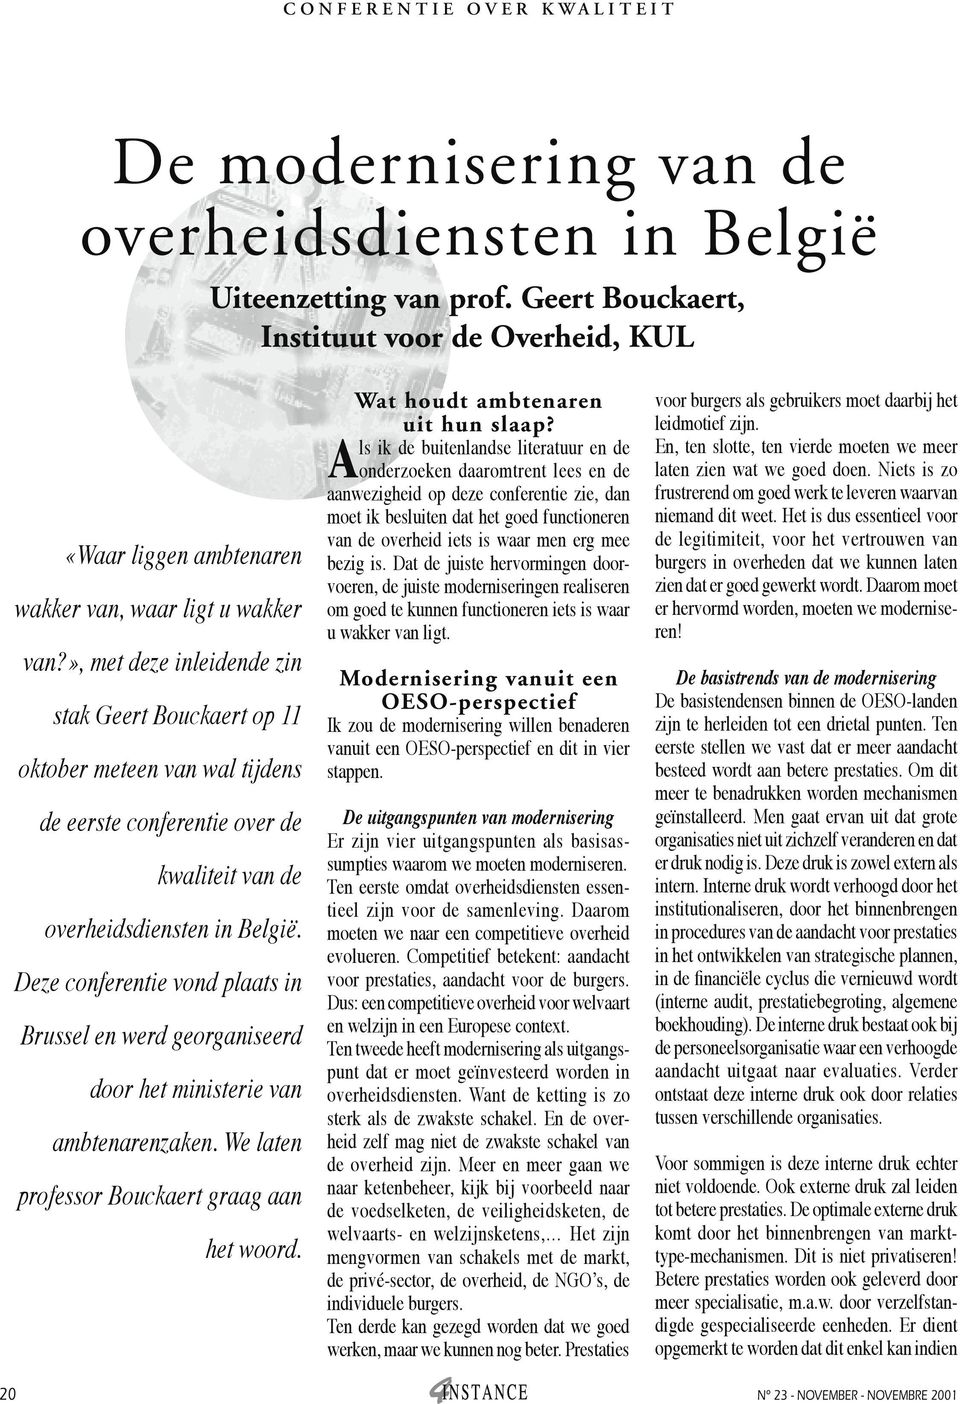 », met deze inleidende zin stak Geert Bouckaert op 11 oktober meteen van wal tijdens de eerste conferentie over de kwaliteit van de overheidsdiensten in België.